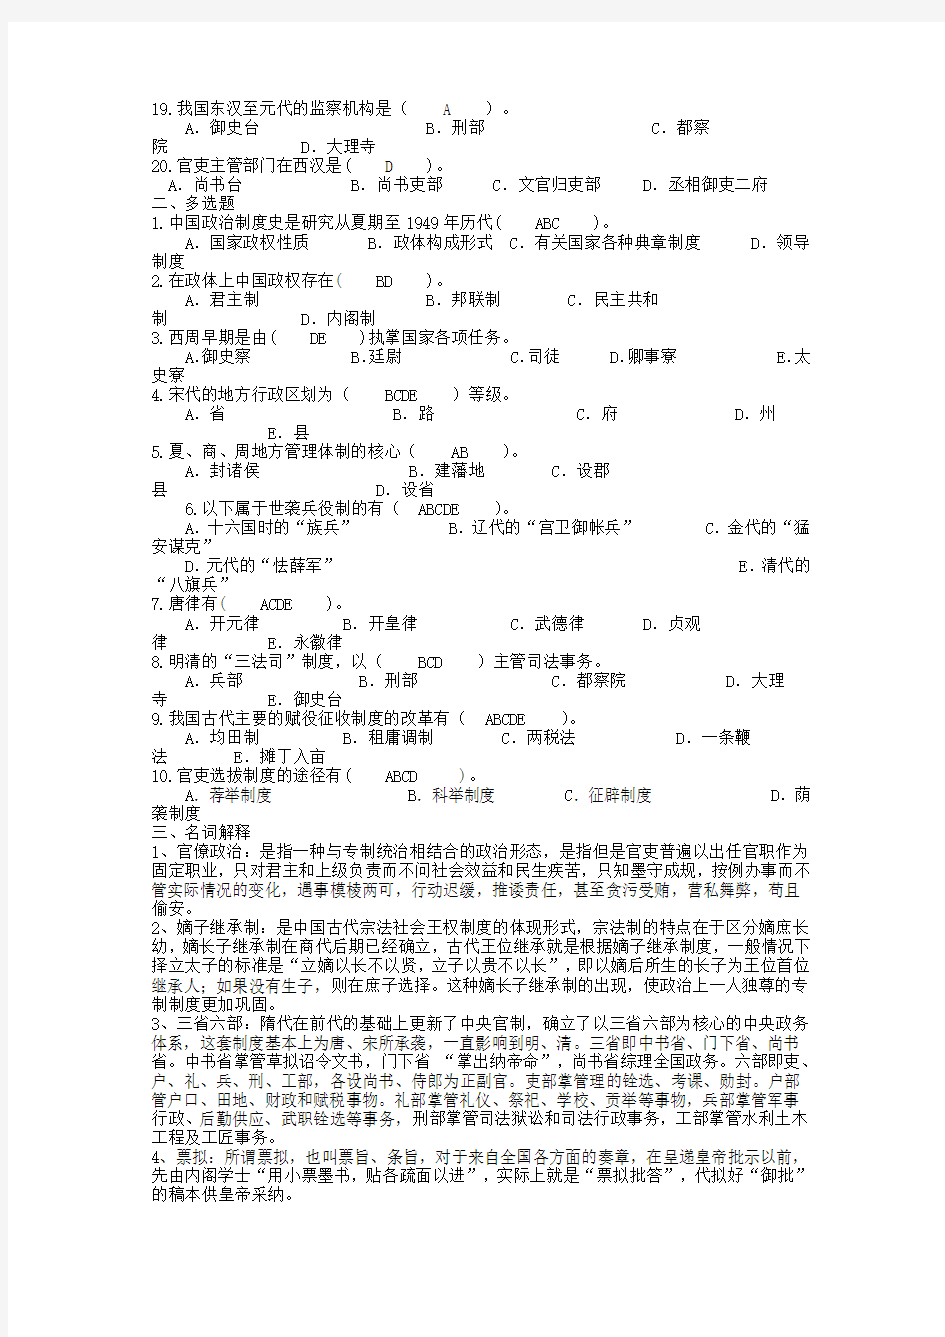 中国政治制度史平时作业答案(2013)分析